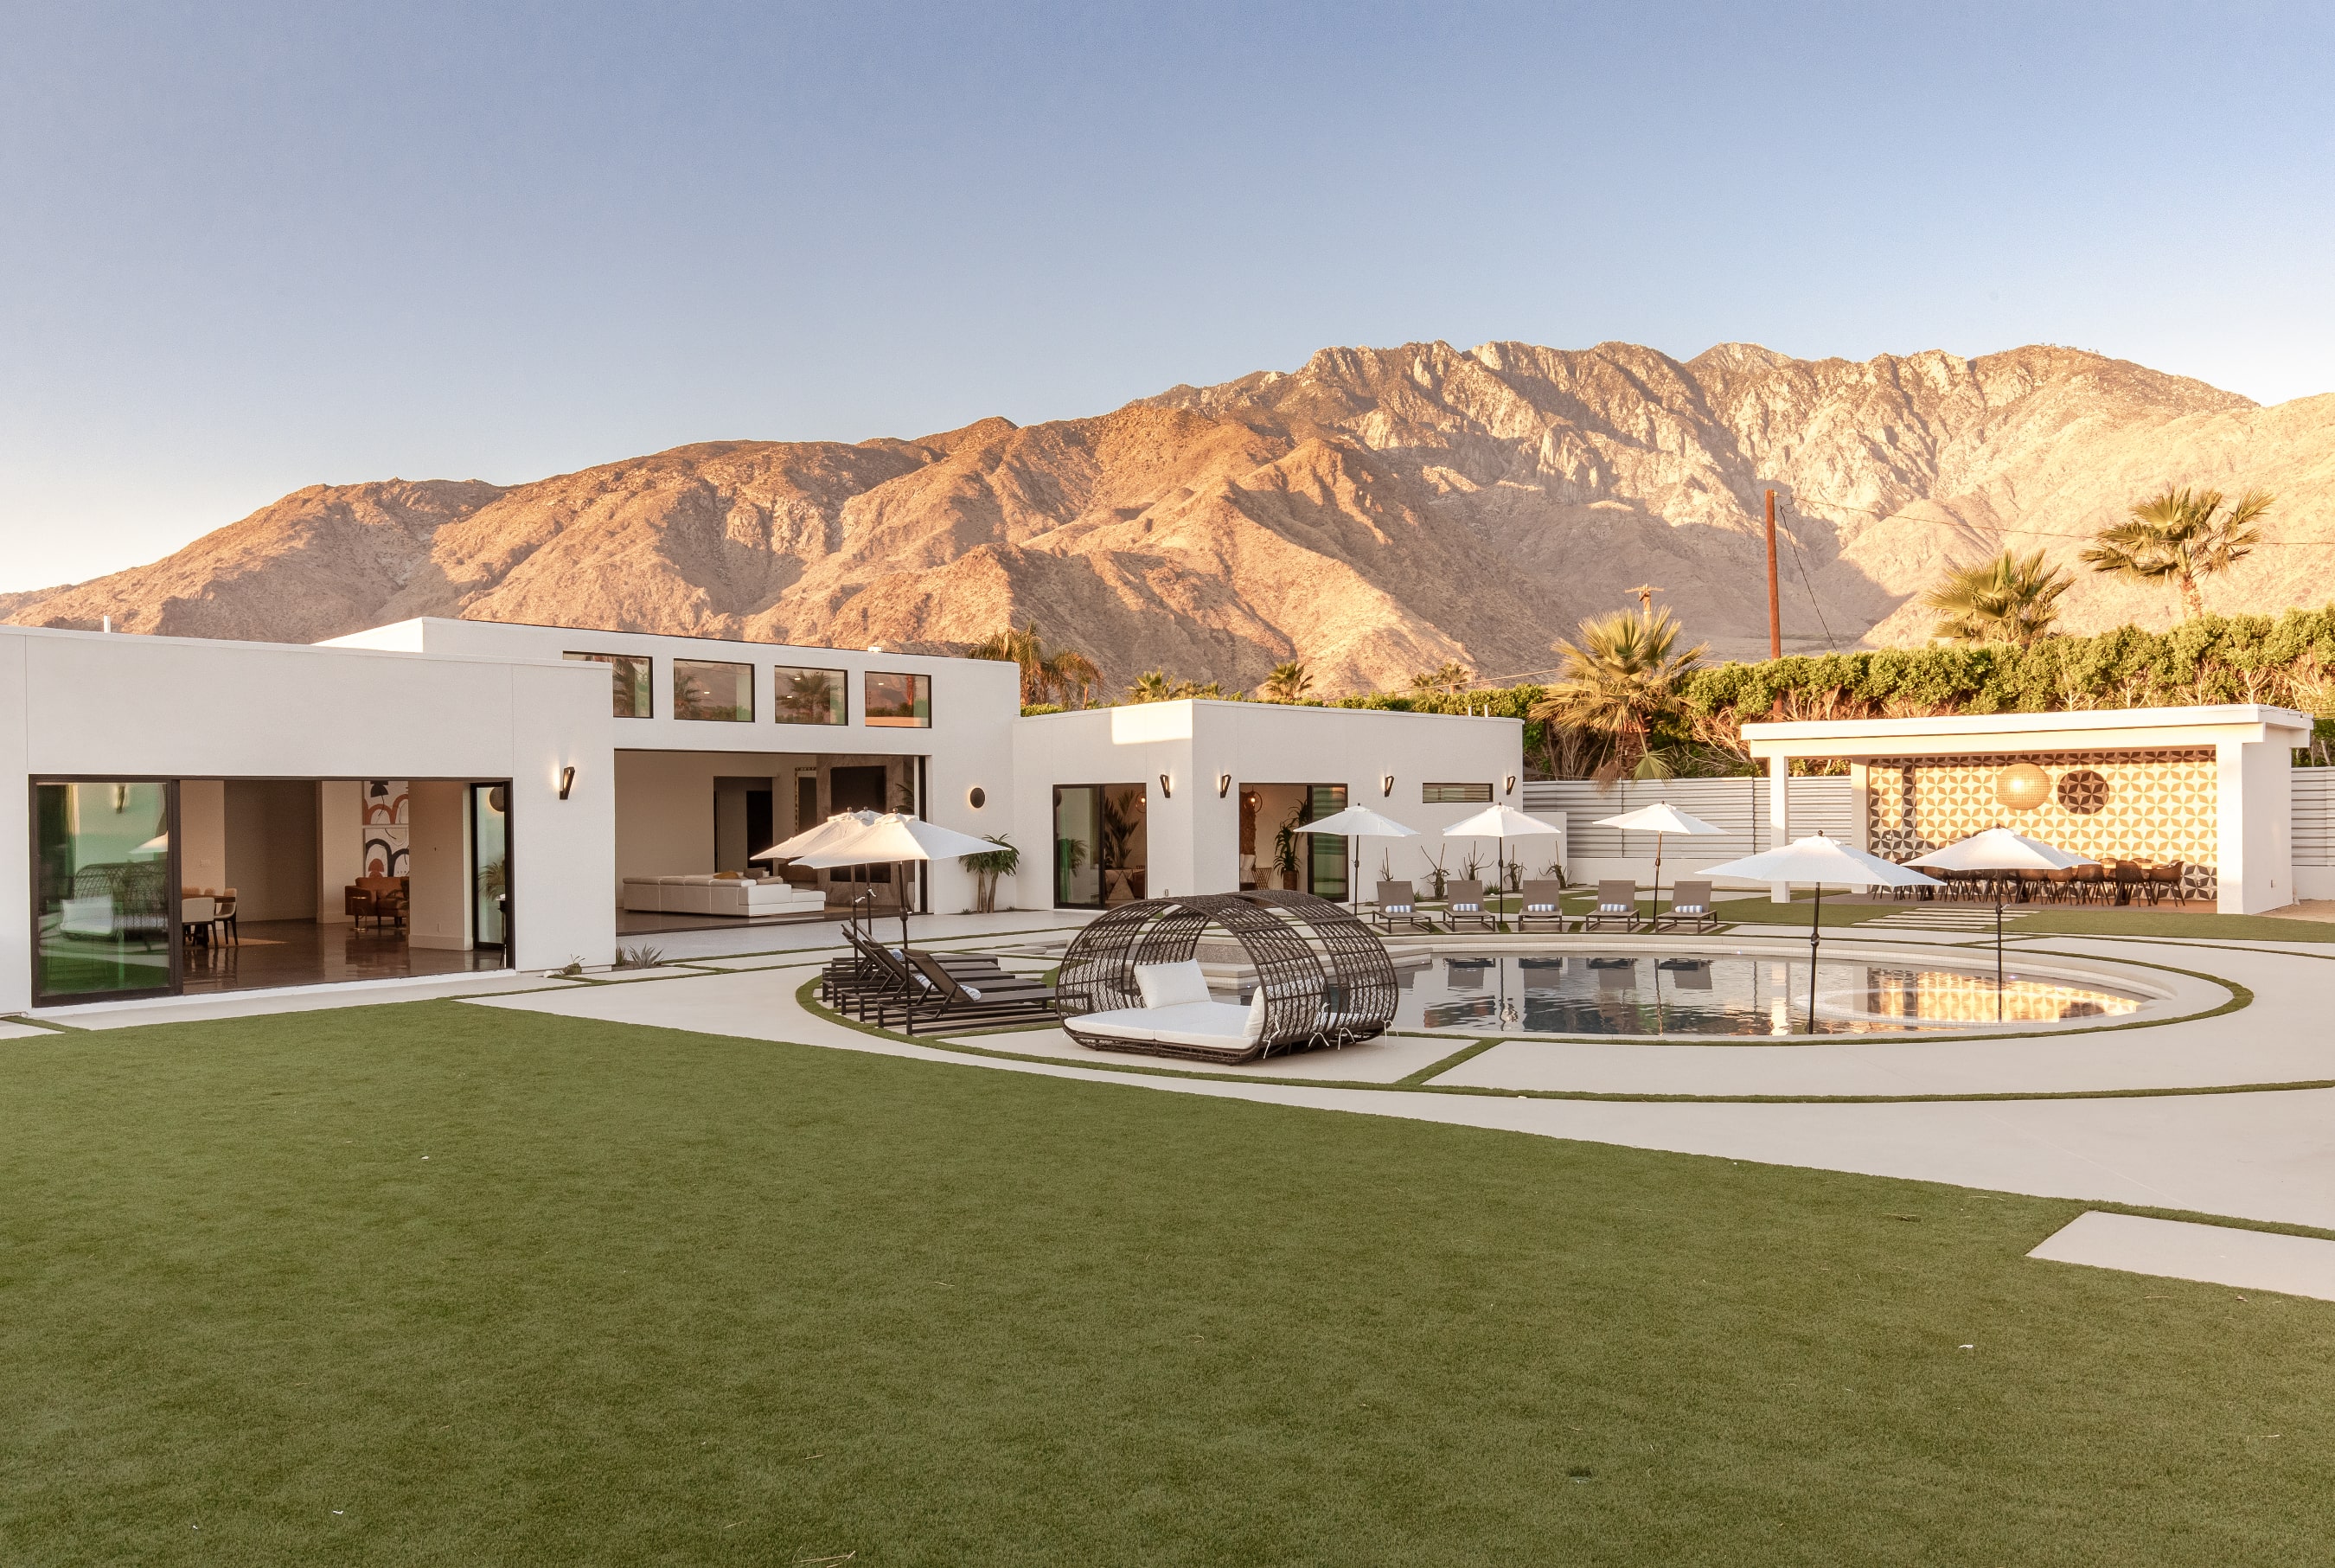 Palm Springs, California – Esta vasta escapada al desierto se ubica a pocas horas de Los Ángeles en vehículo. El impresionante espacio al aire libre incluye una piscina privada y un pabellón para ver el atardecer.